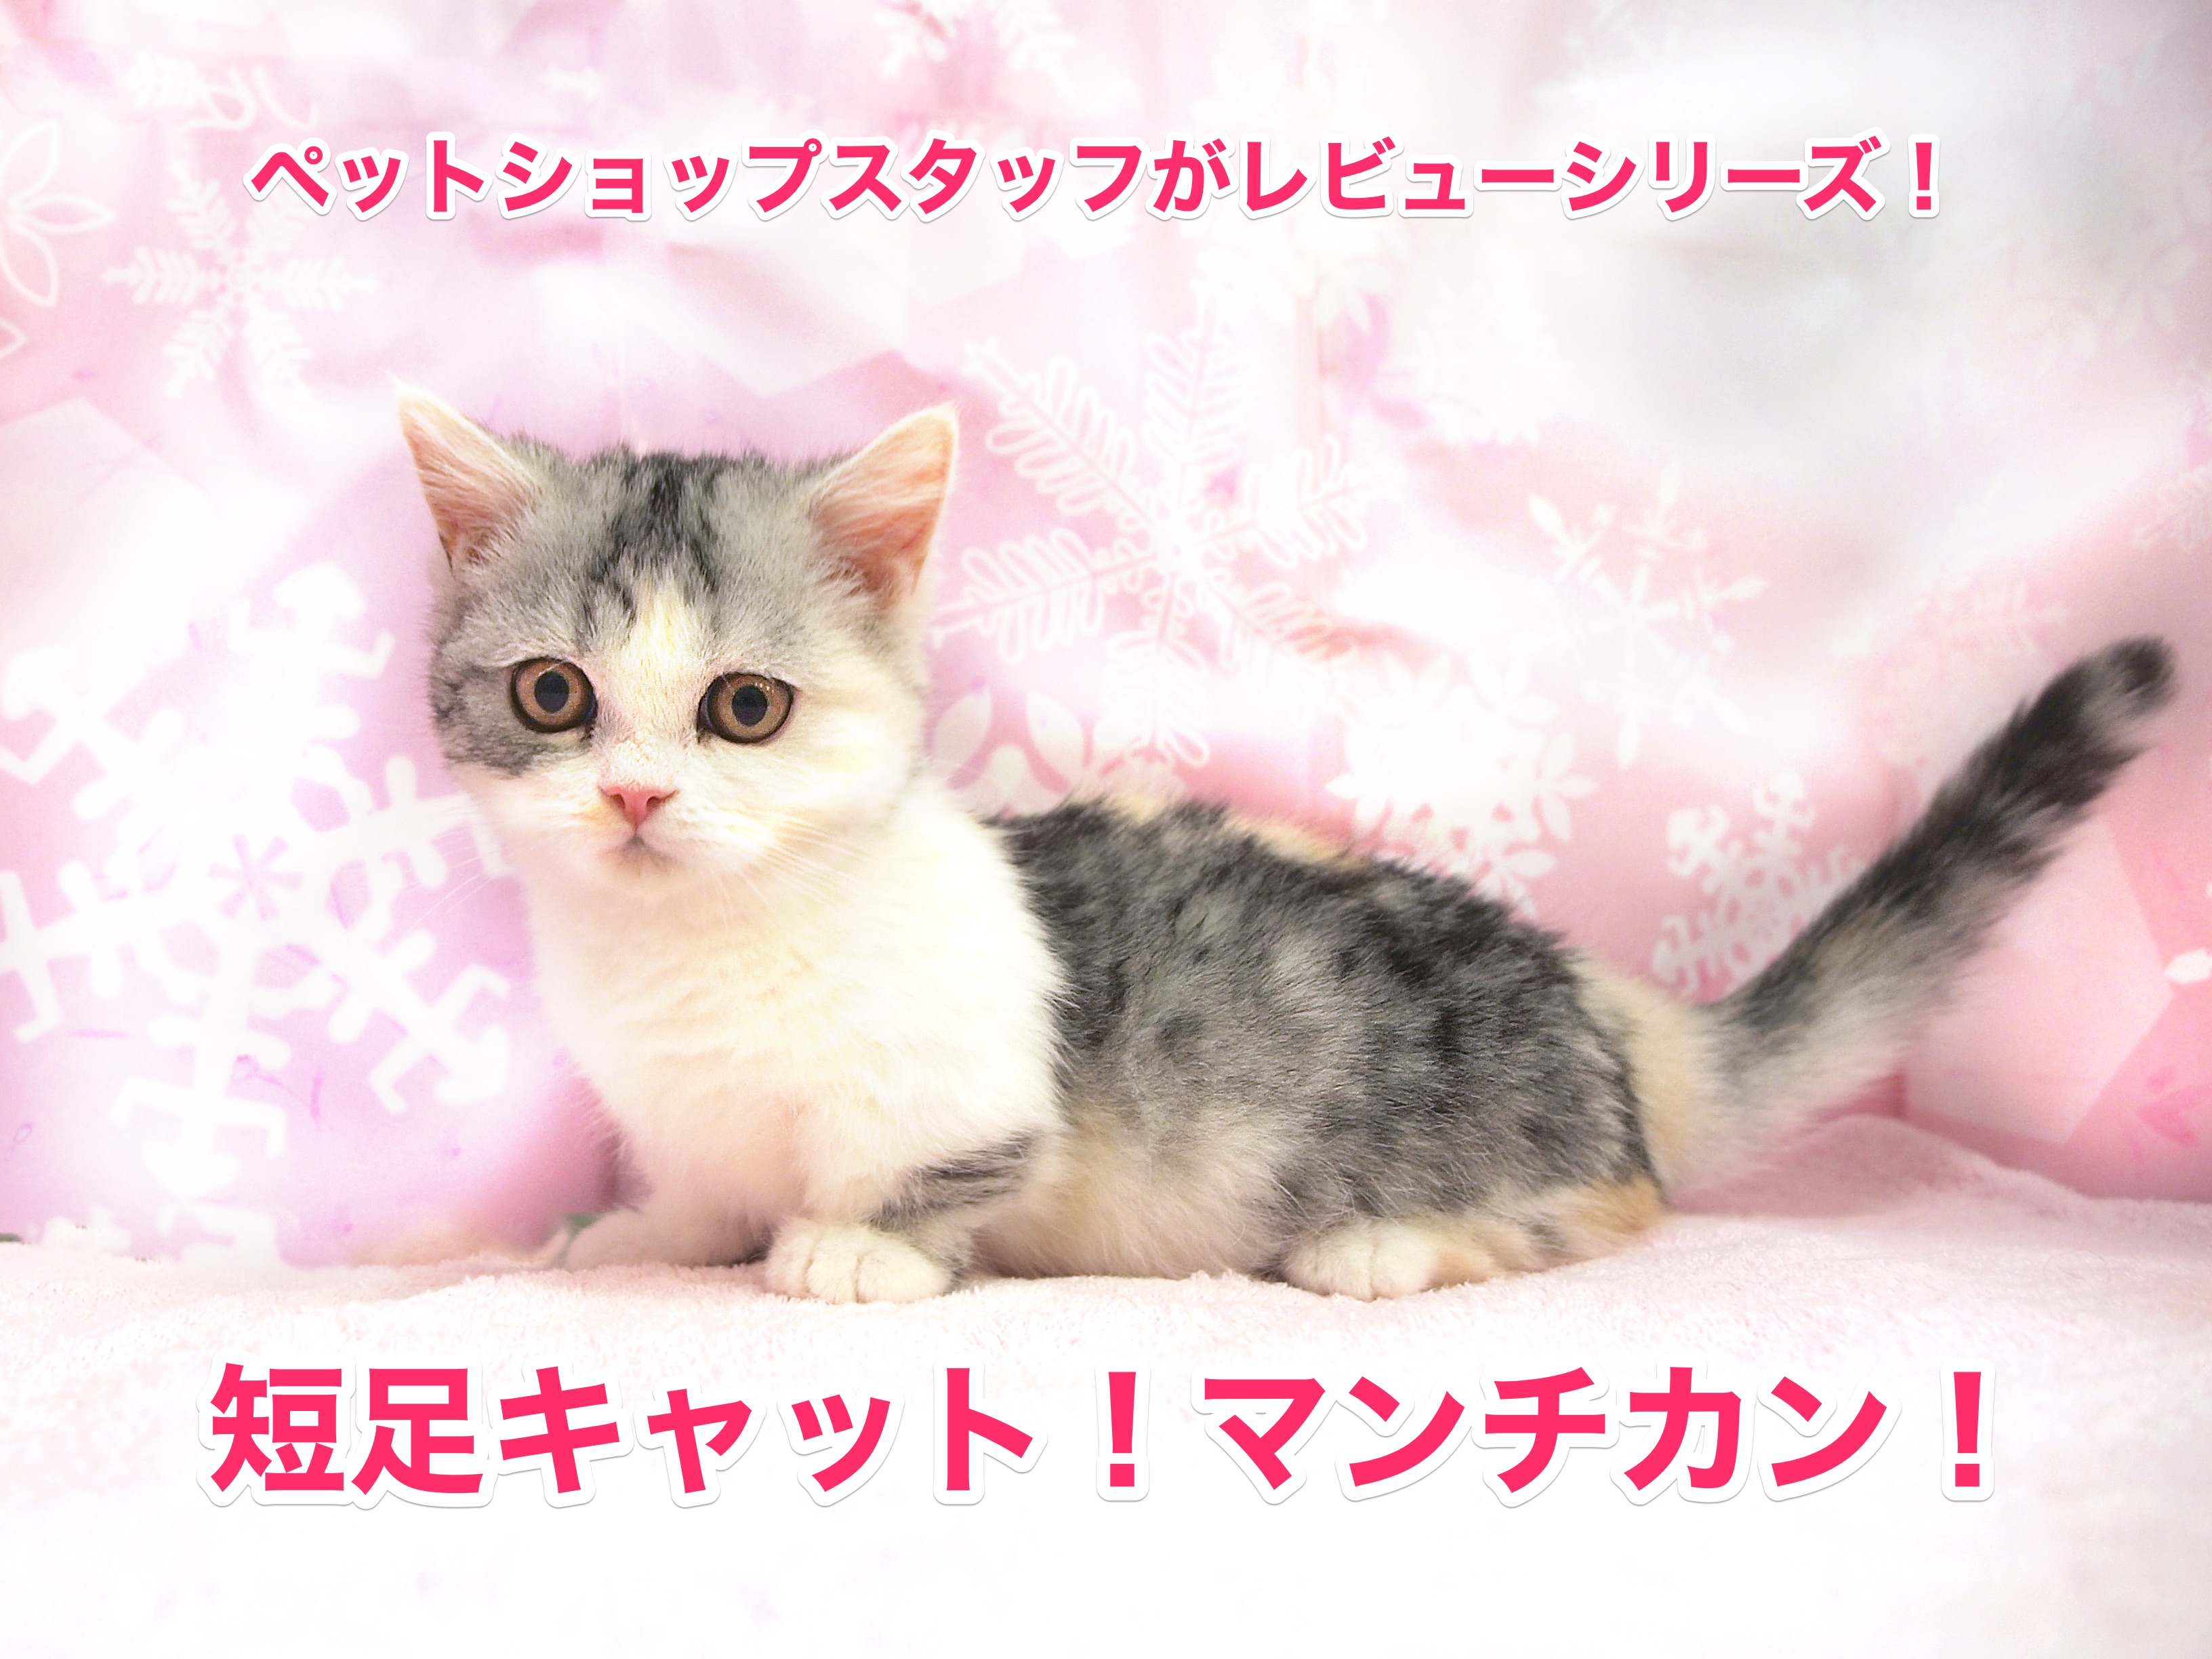 マンチカン特集 日本を魅了する短足キャットをペットショップスタッフがレビュー マルワンblog ペットショップ マルワン 小さめ子犬 美形な子猫 初心者安心のサポート